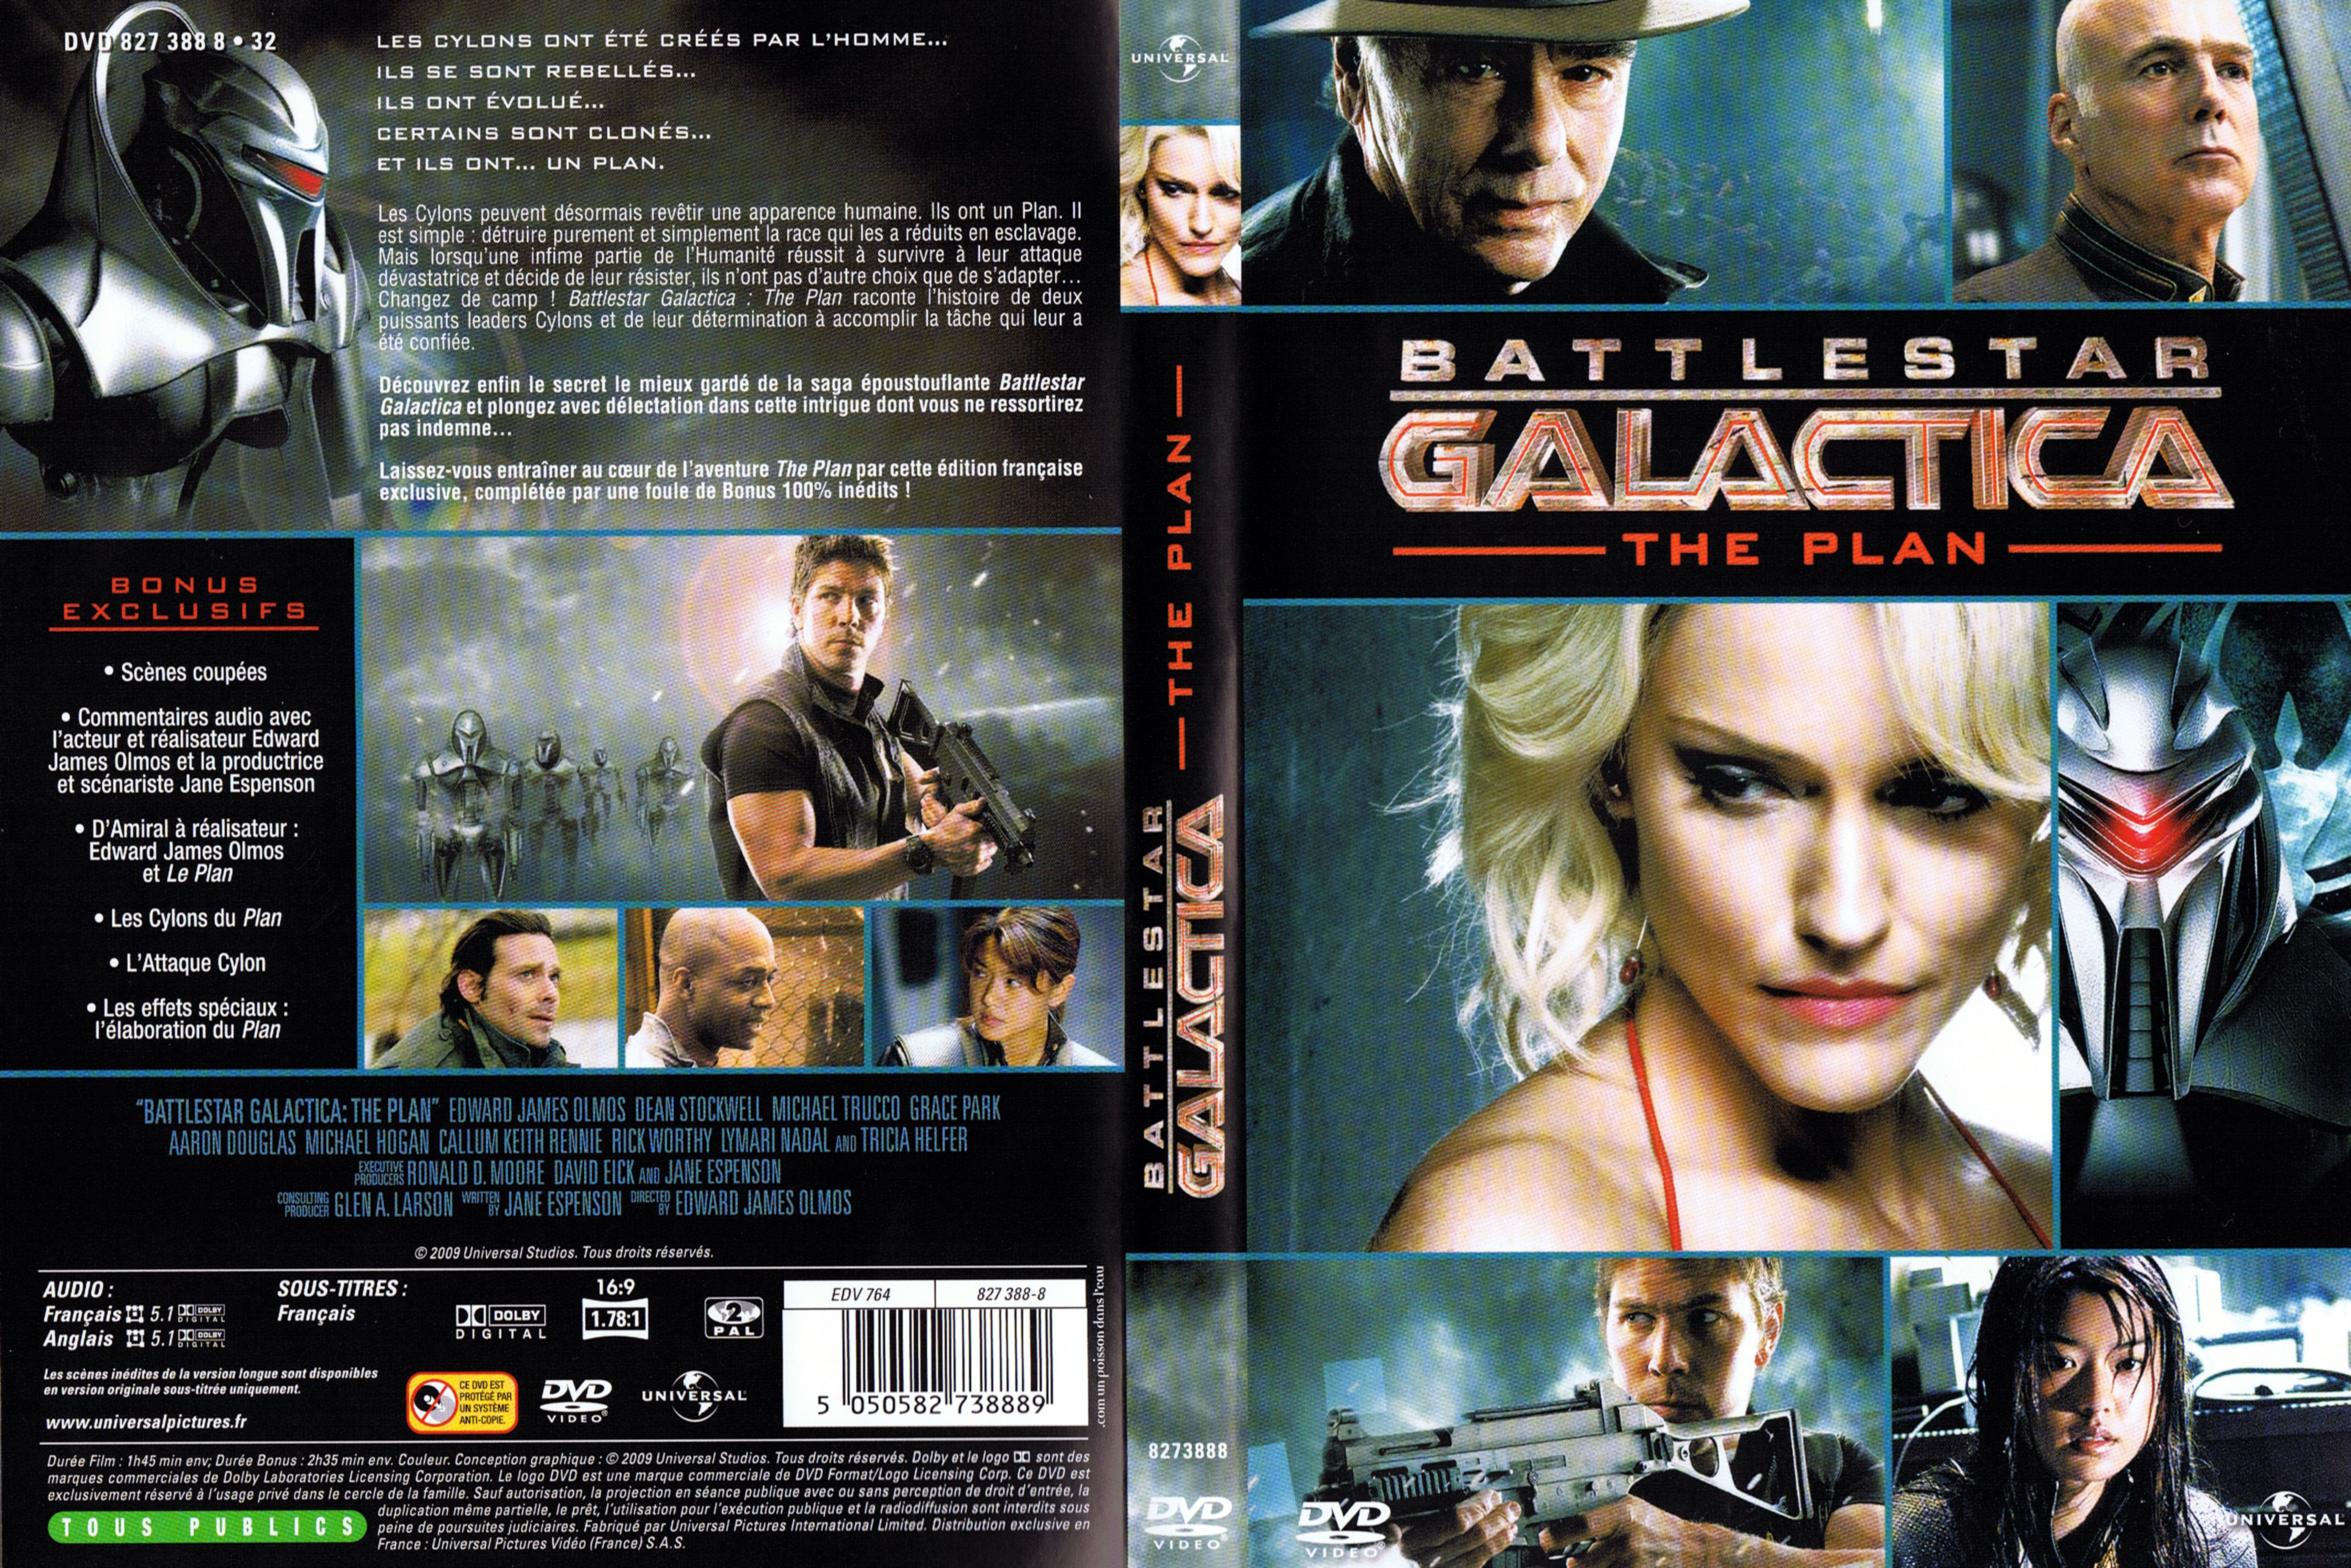 Jaquette DVD Battlestar Galactica The plan